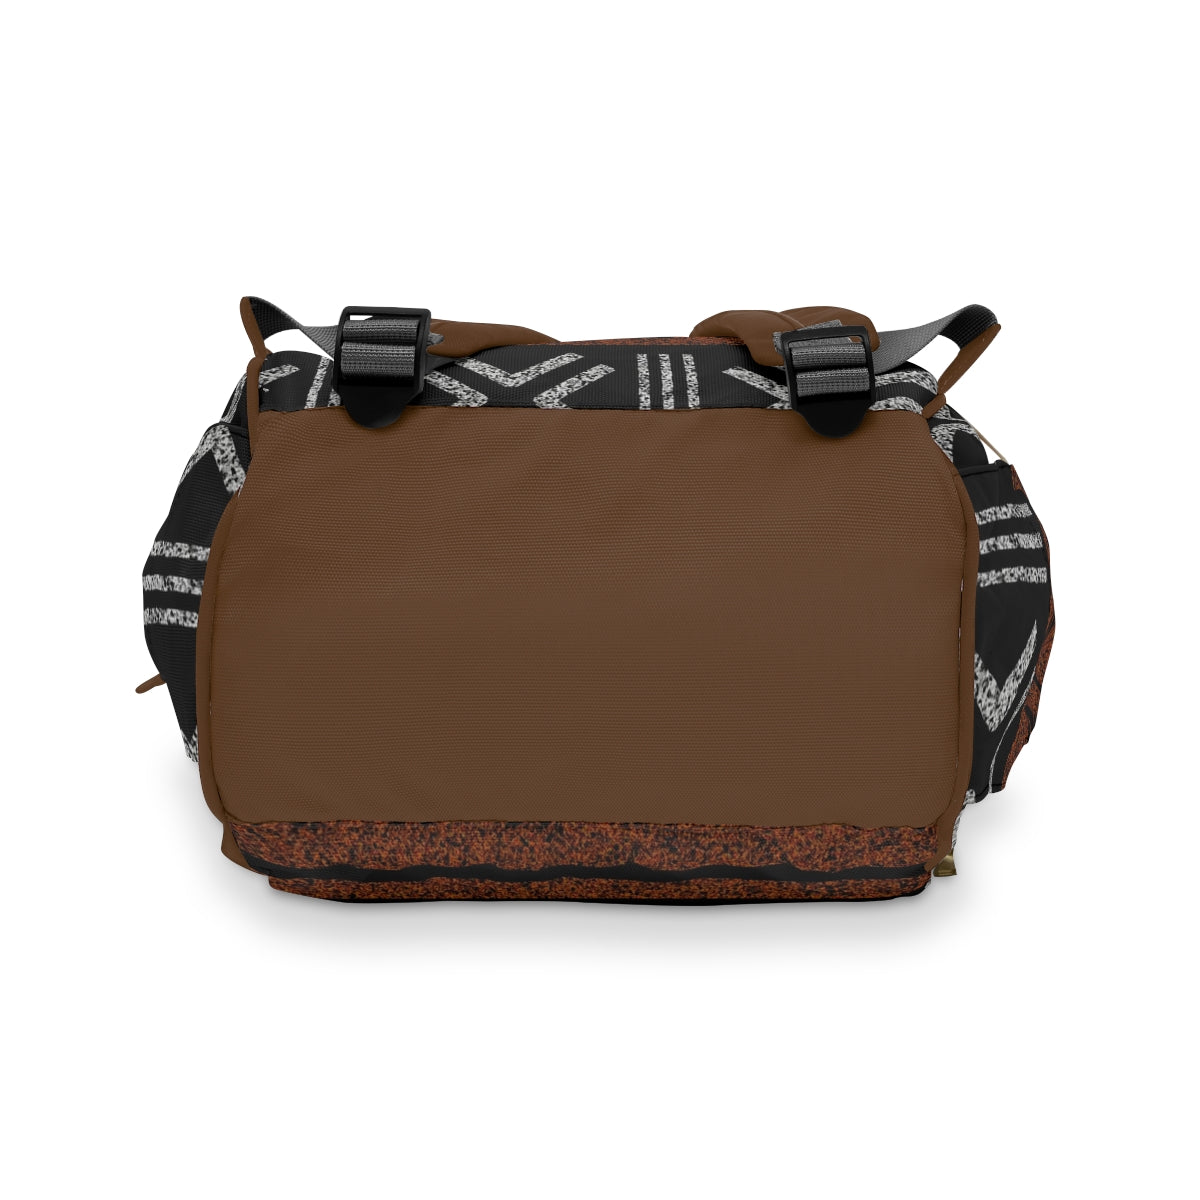 Kente Pattern Dark Brown Diaper Bag